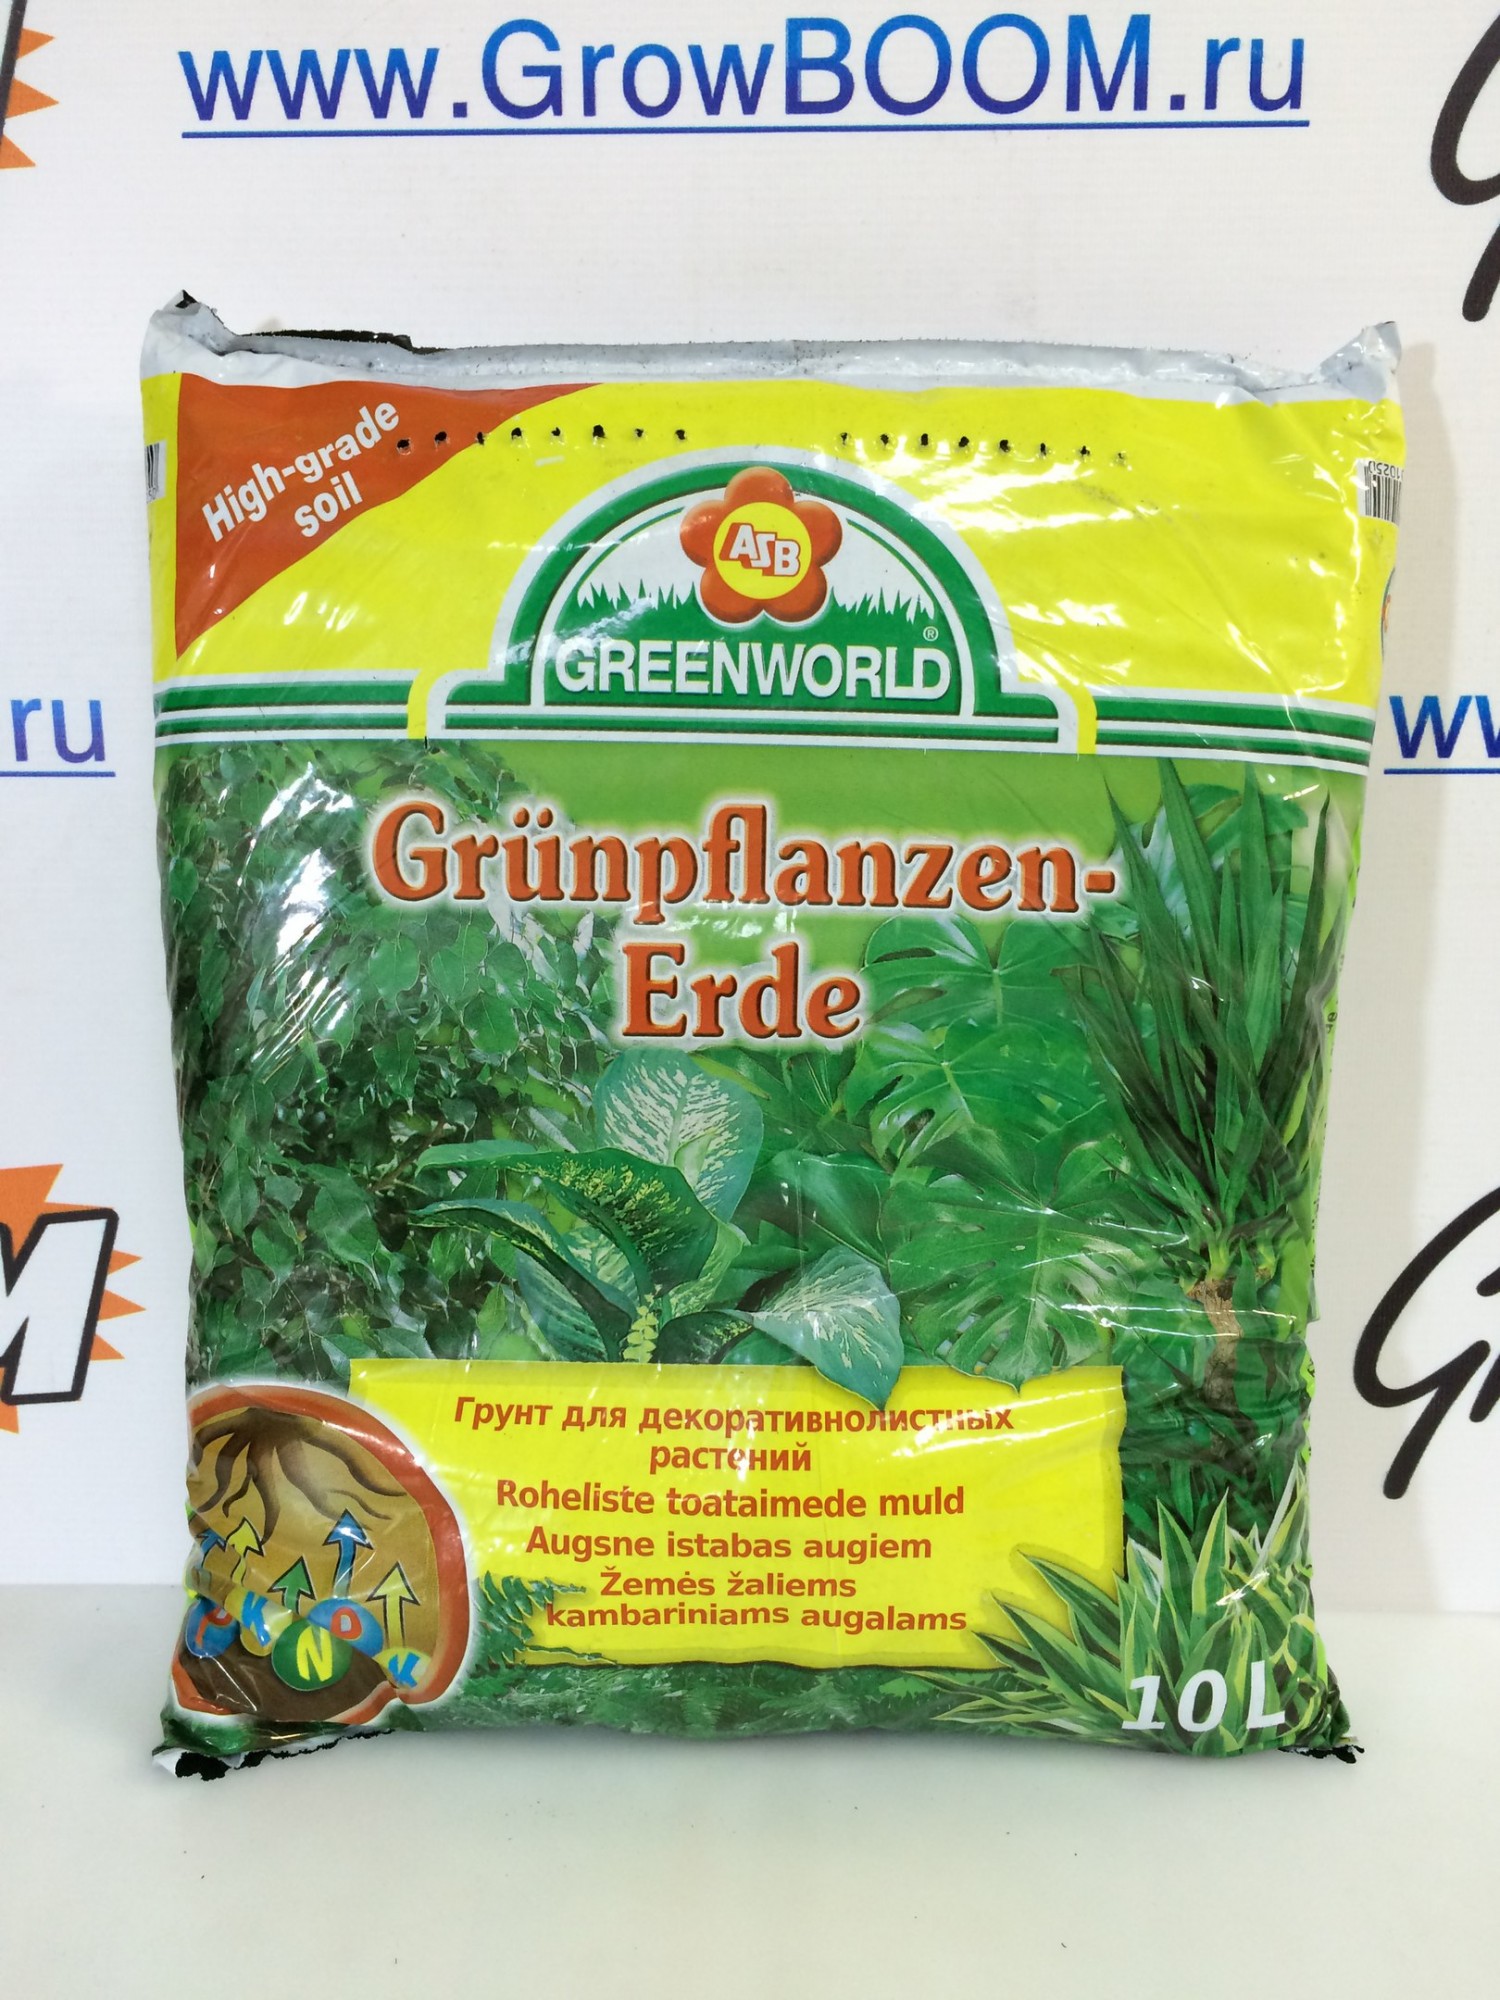 Грунт для декоративнолистных растений Grunpflanzen-Erde Greenworld